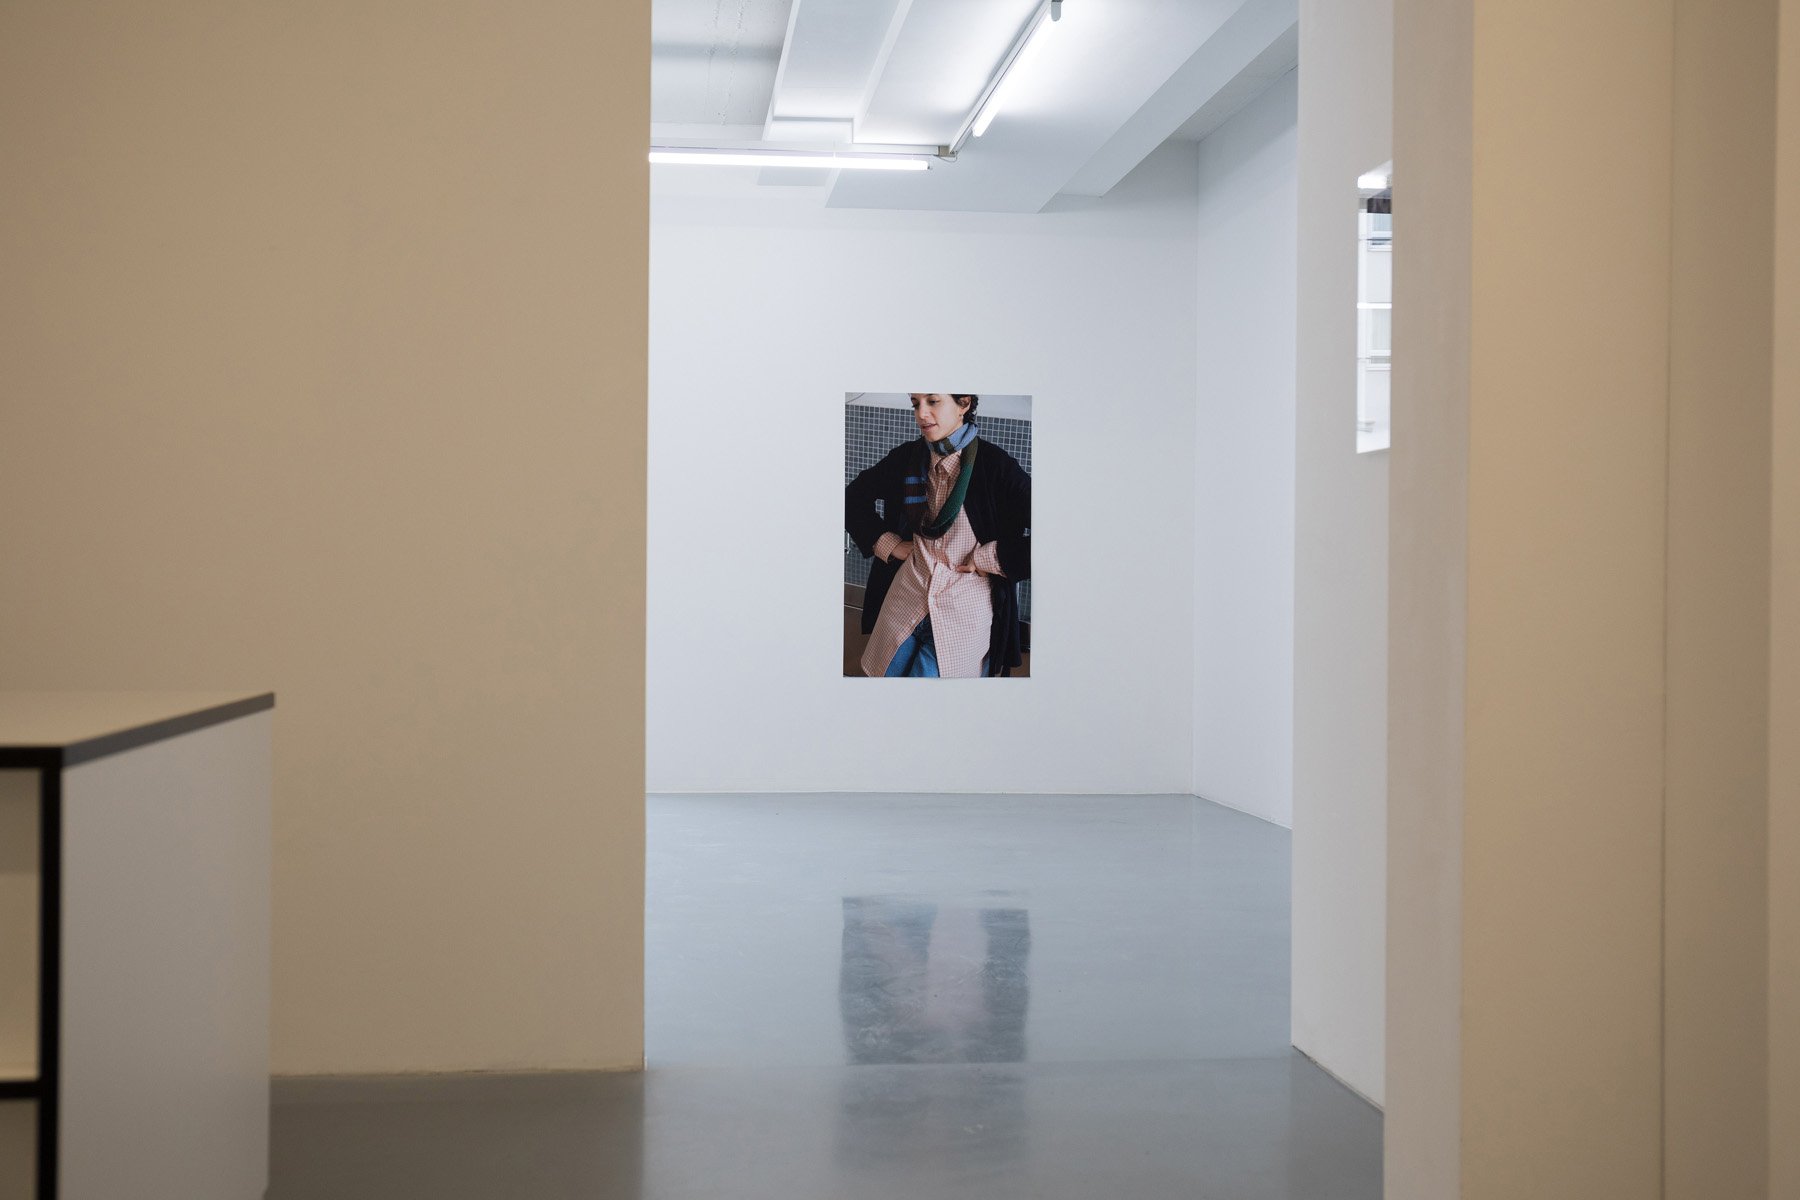 Niklas Taleb: Live in Paris, Installationsansicht, 2021, Bonner Kunstverein. Courtesy der Künstler und Lucas Hirsch, Düsseldorf. Foto: Niklas Taleb